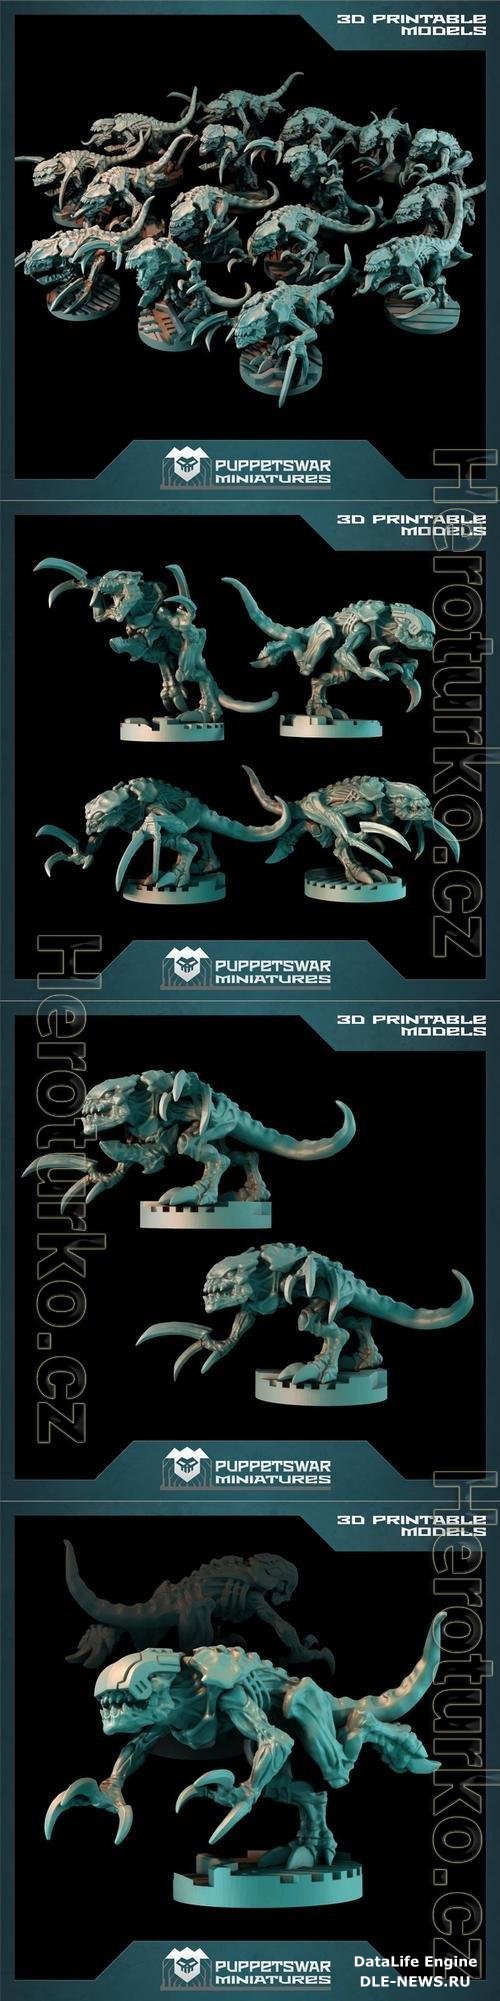 Puppetswar Miniatures - Warriors Pack 3D Print